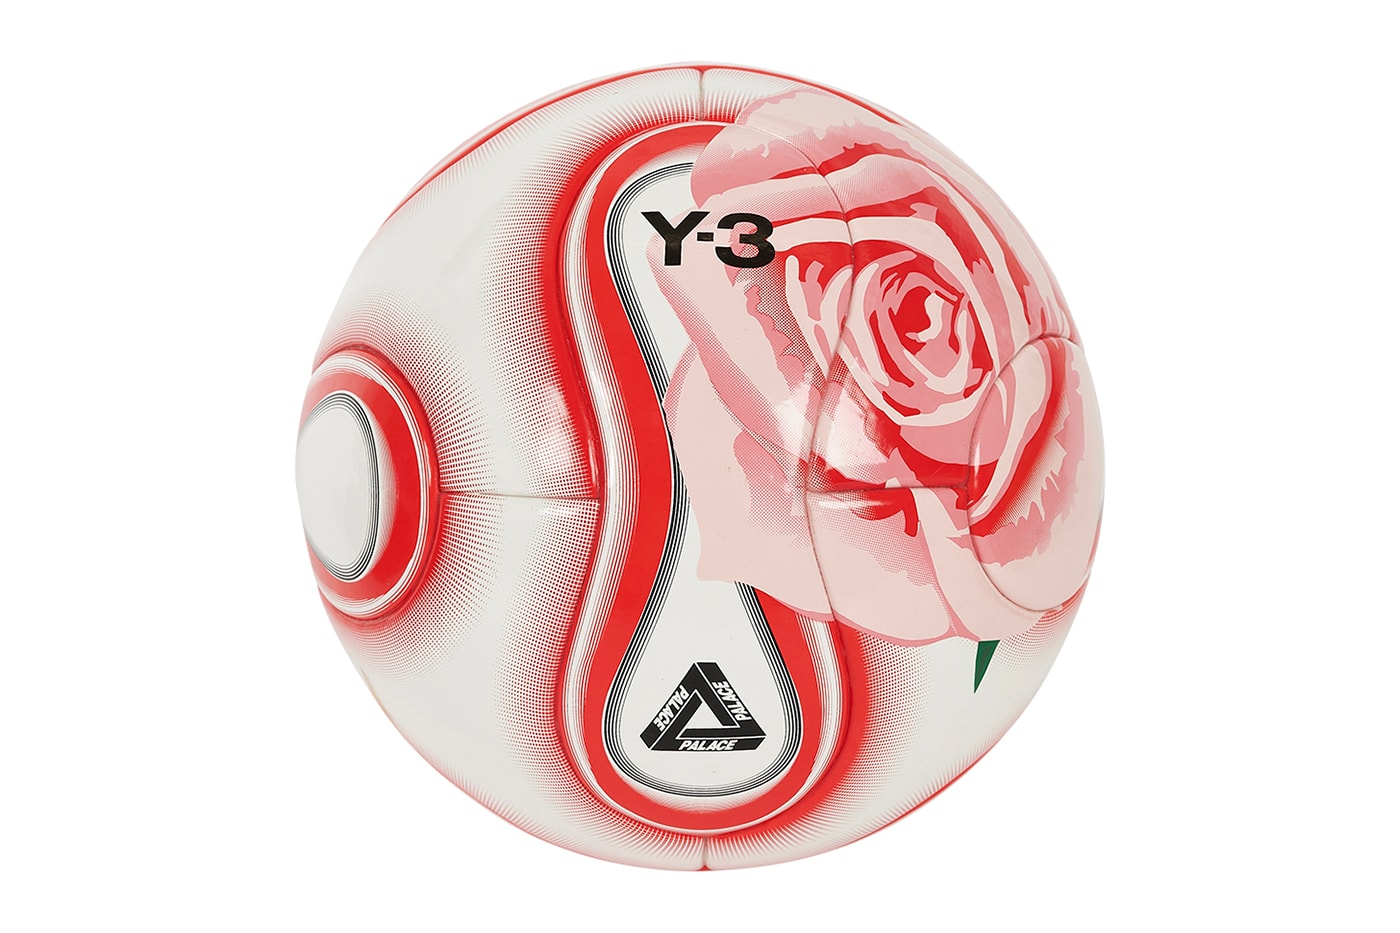 パレス スケートボードが Y-3の20周年を記念したコラボコレクションを発表場 Palace Y-3 FW22 Collection Announcement Release Info Date Buy Price Yohji Yamamoto Zinedine Zidane Lucas Puig